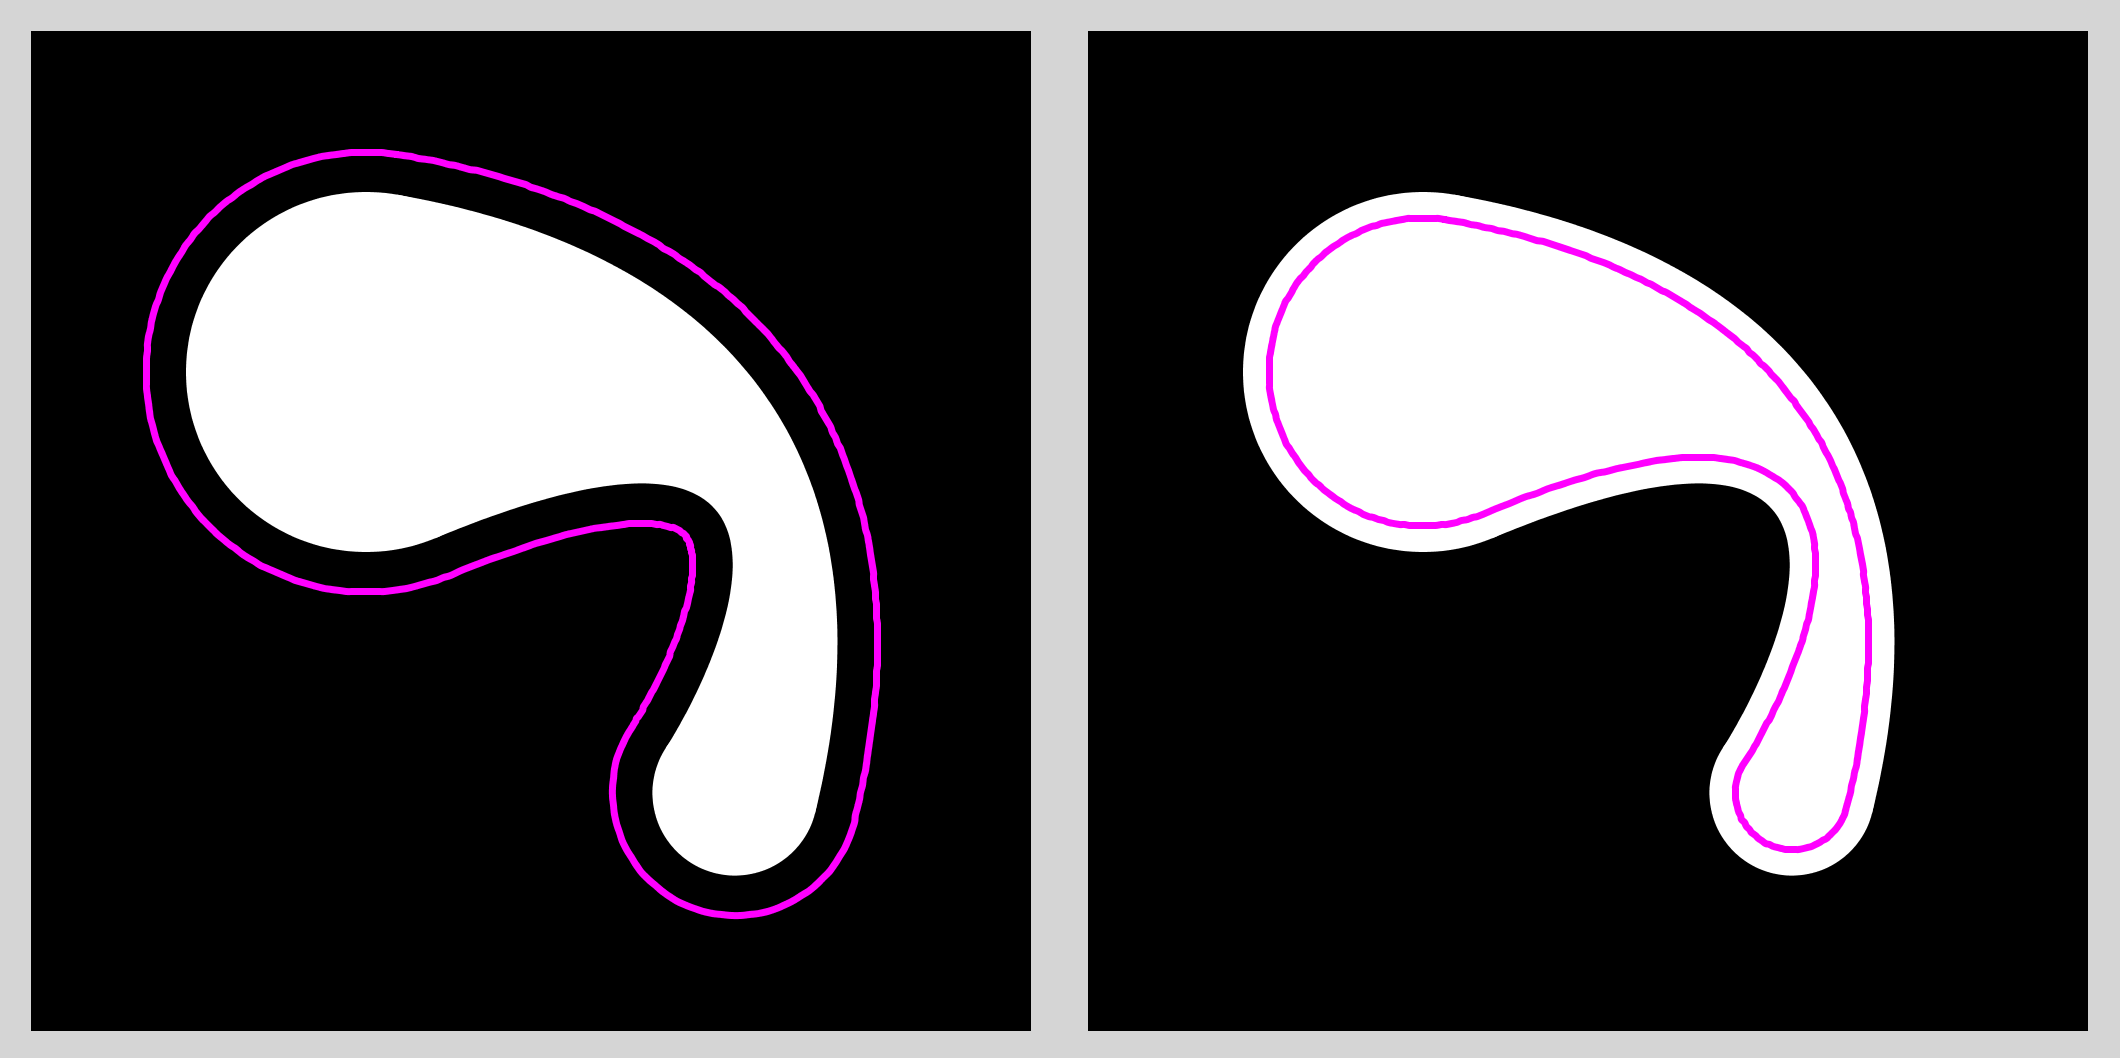 Glob offset curves.